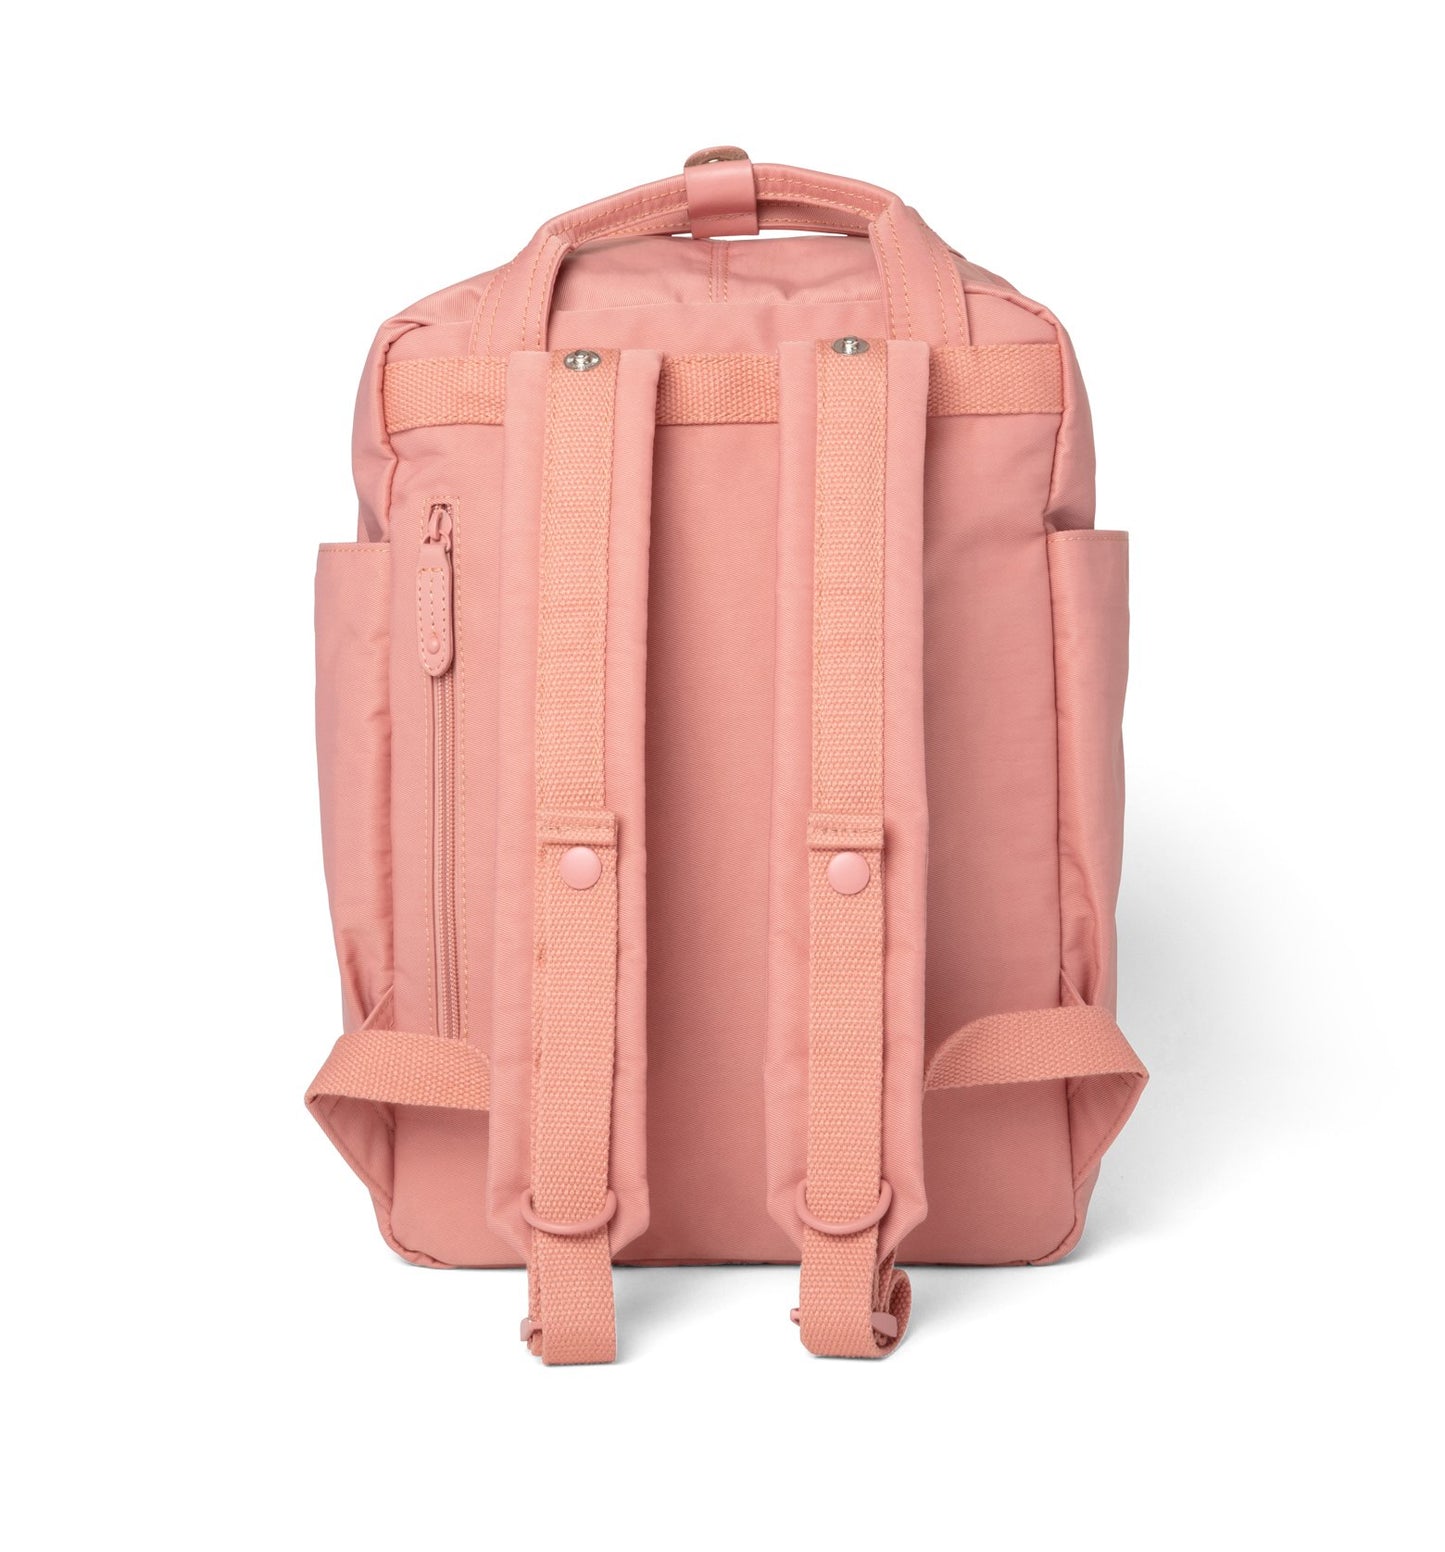 Cama (M) Dusty Rose Waterproof Laptop Backpack